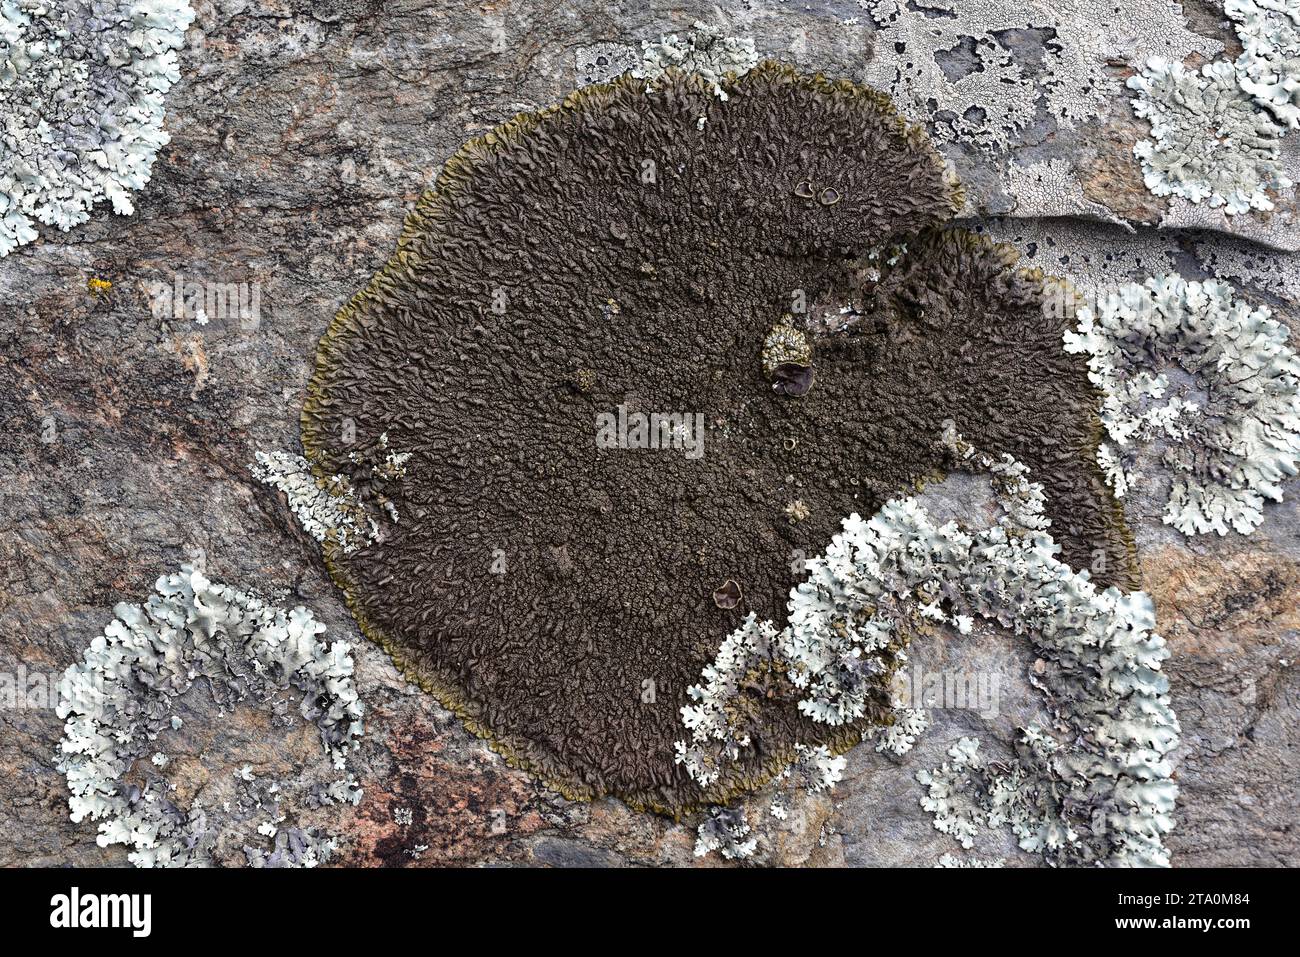 Croûlose lichen Xanthoparmelia pulla. Les Alberes, province de Gérone, Catalogne, Espagne. Banque D'Images